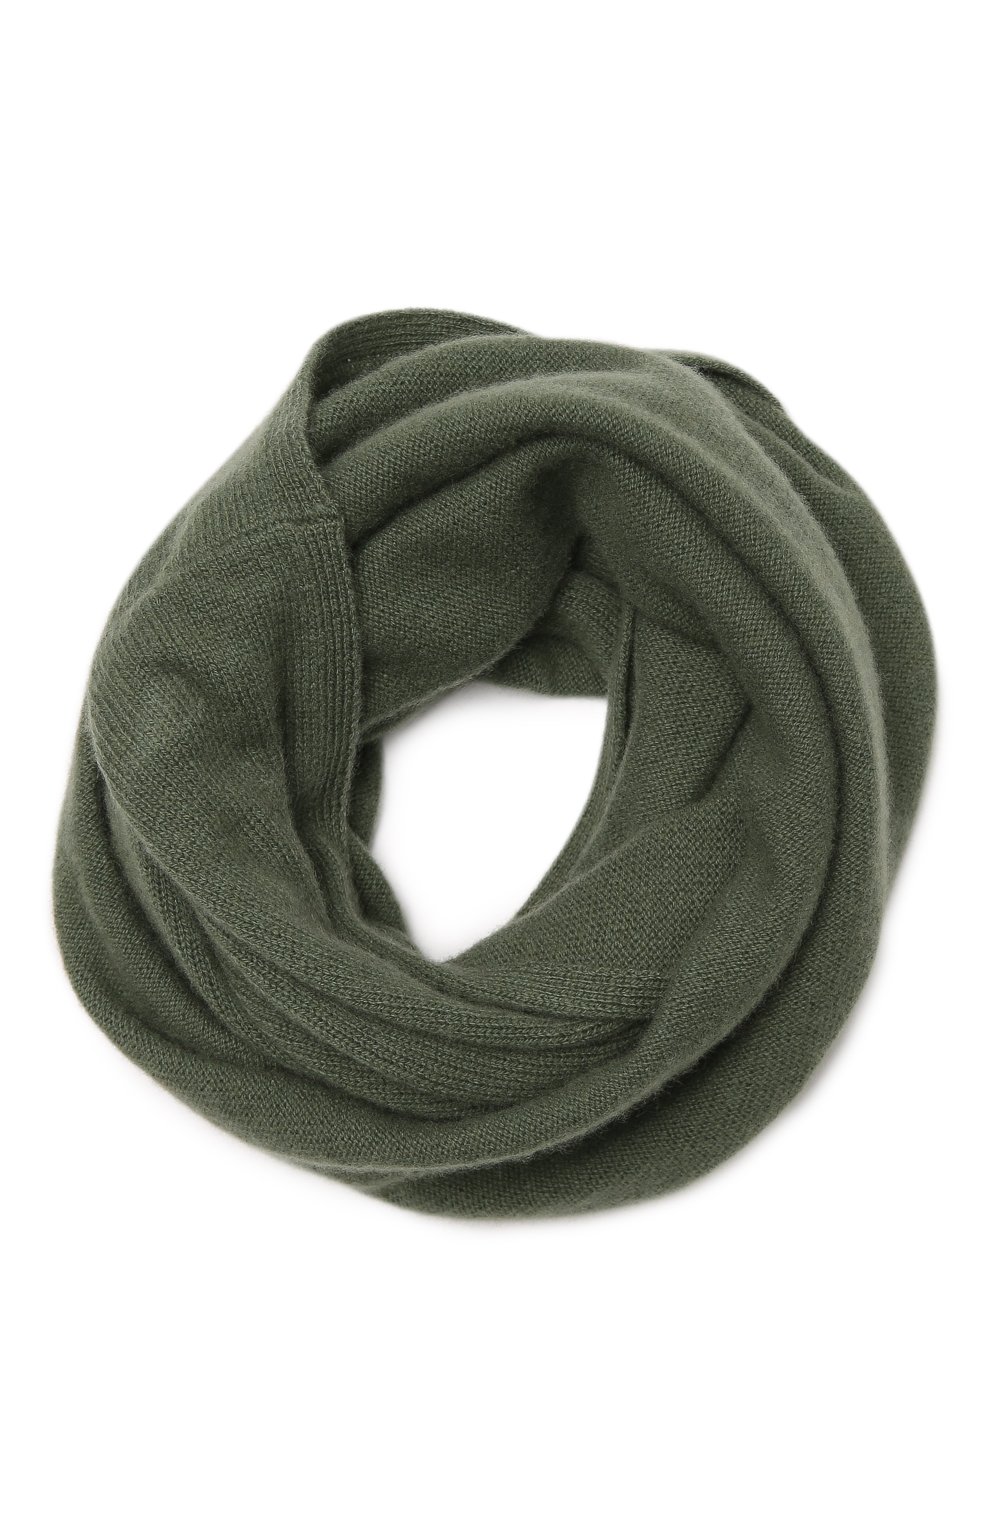 Женский зеленый кашемировый шарф-снуд TEGIN купить в интернет-магазине ЦУМ,арт. 3169